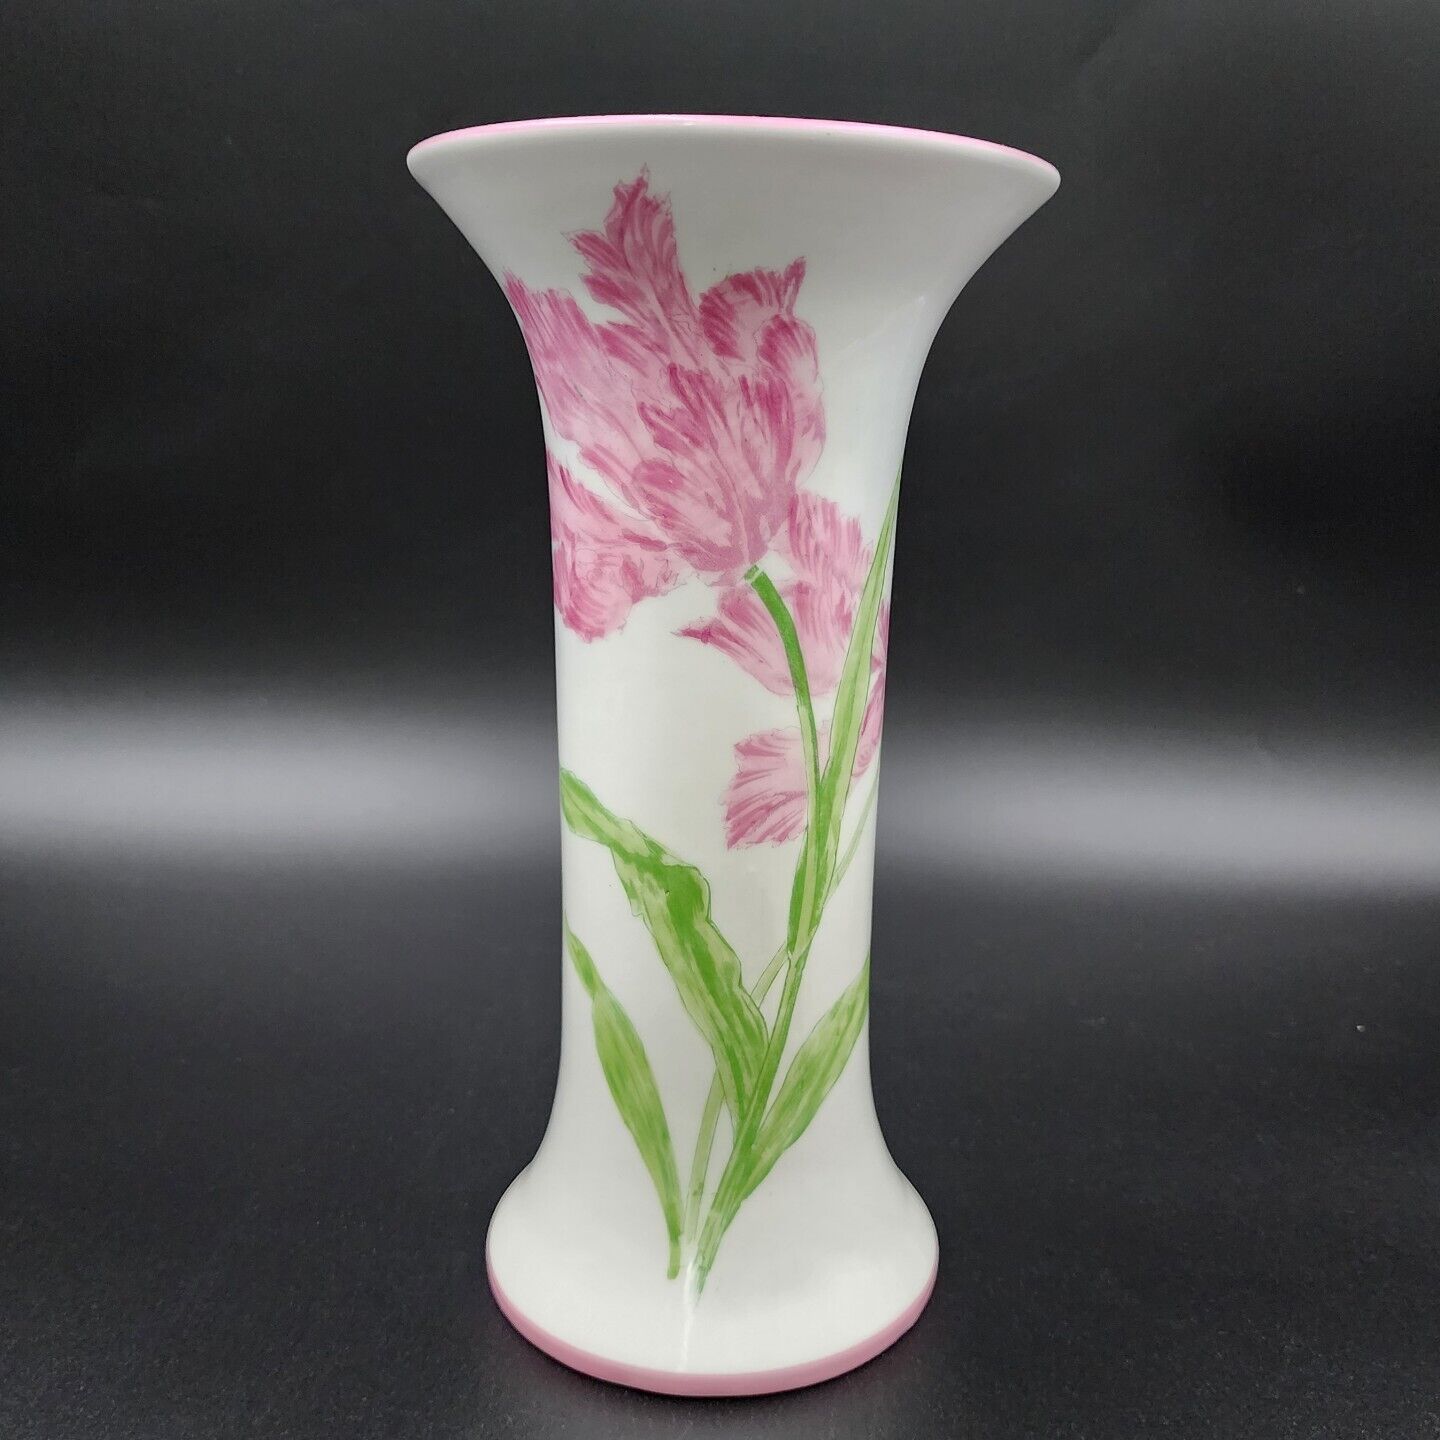 Vintage A Mottahedeh Design Vase Porcelain Italy Handpainted Pink Flowers Signed